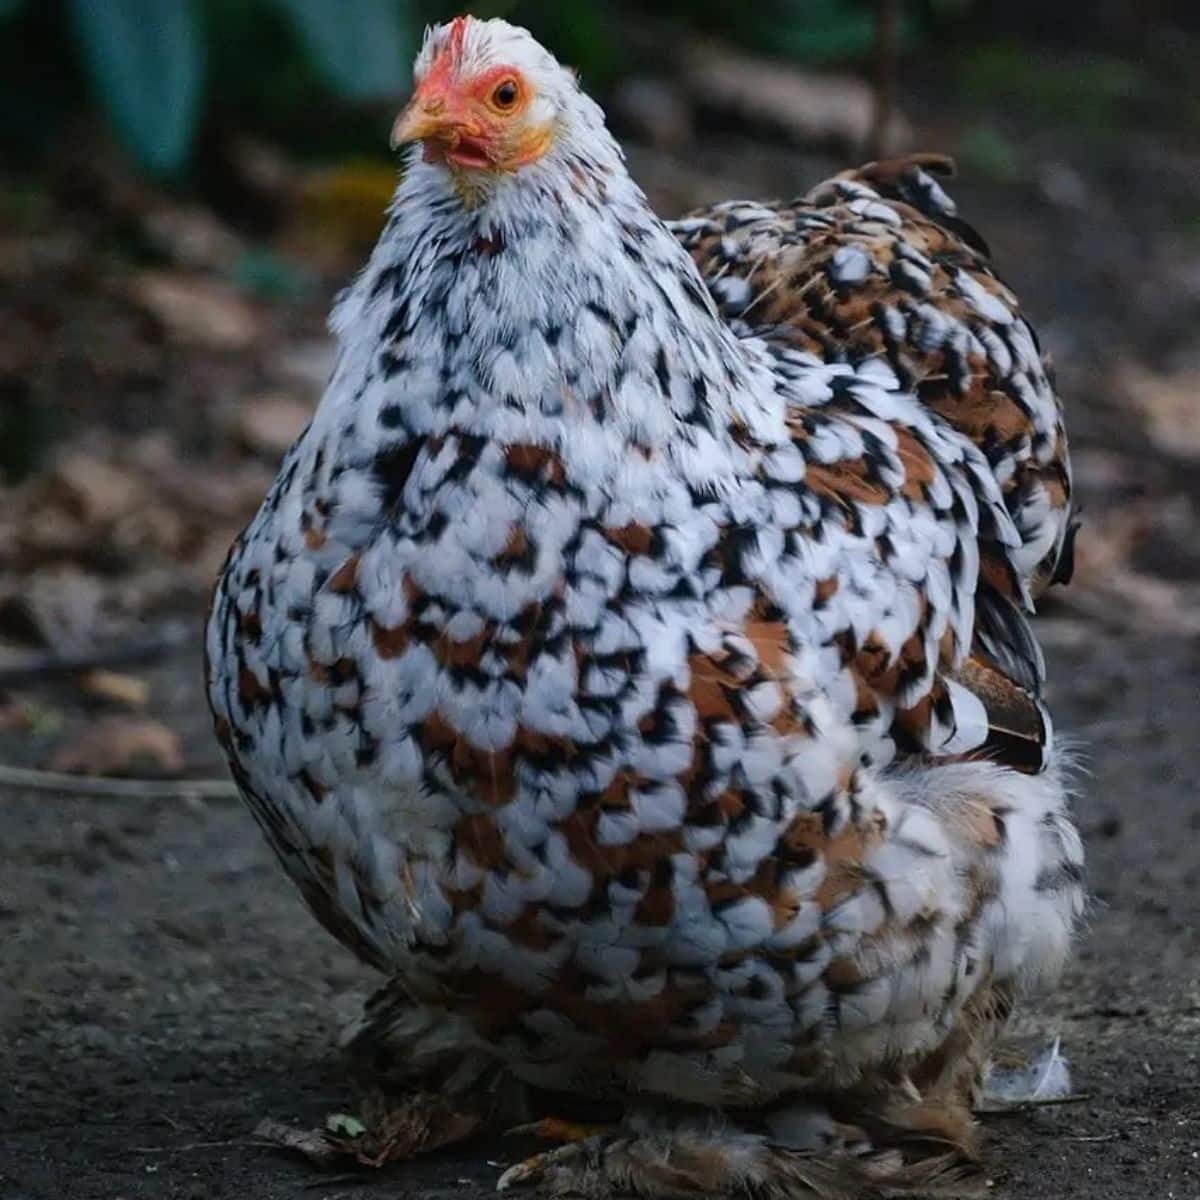 An adorable mottled Pekin hen stands in a backyard.